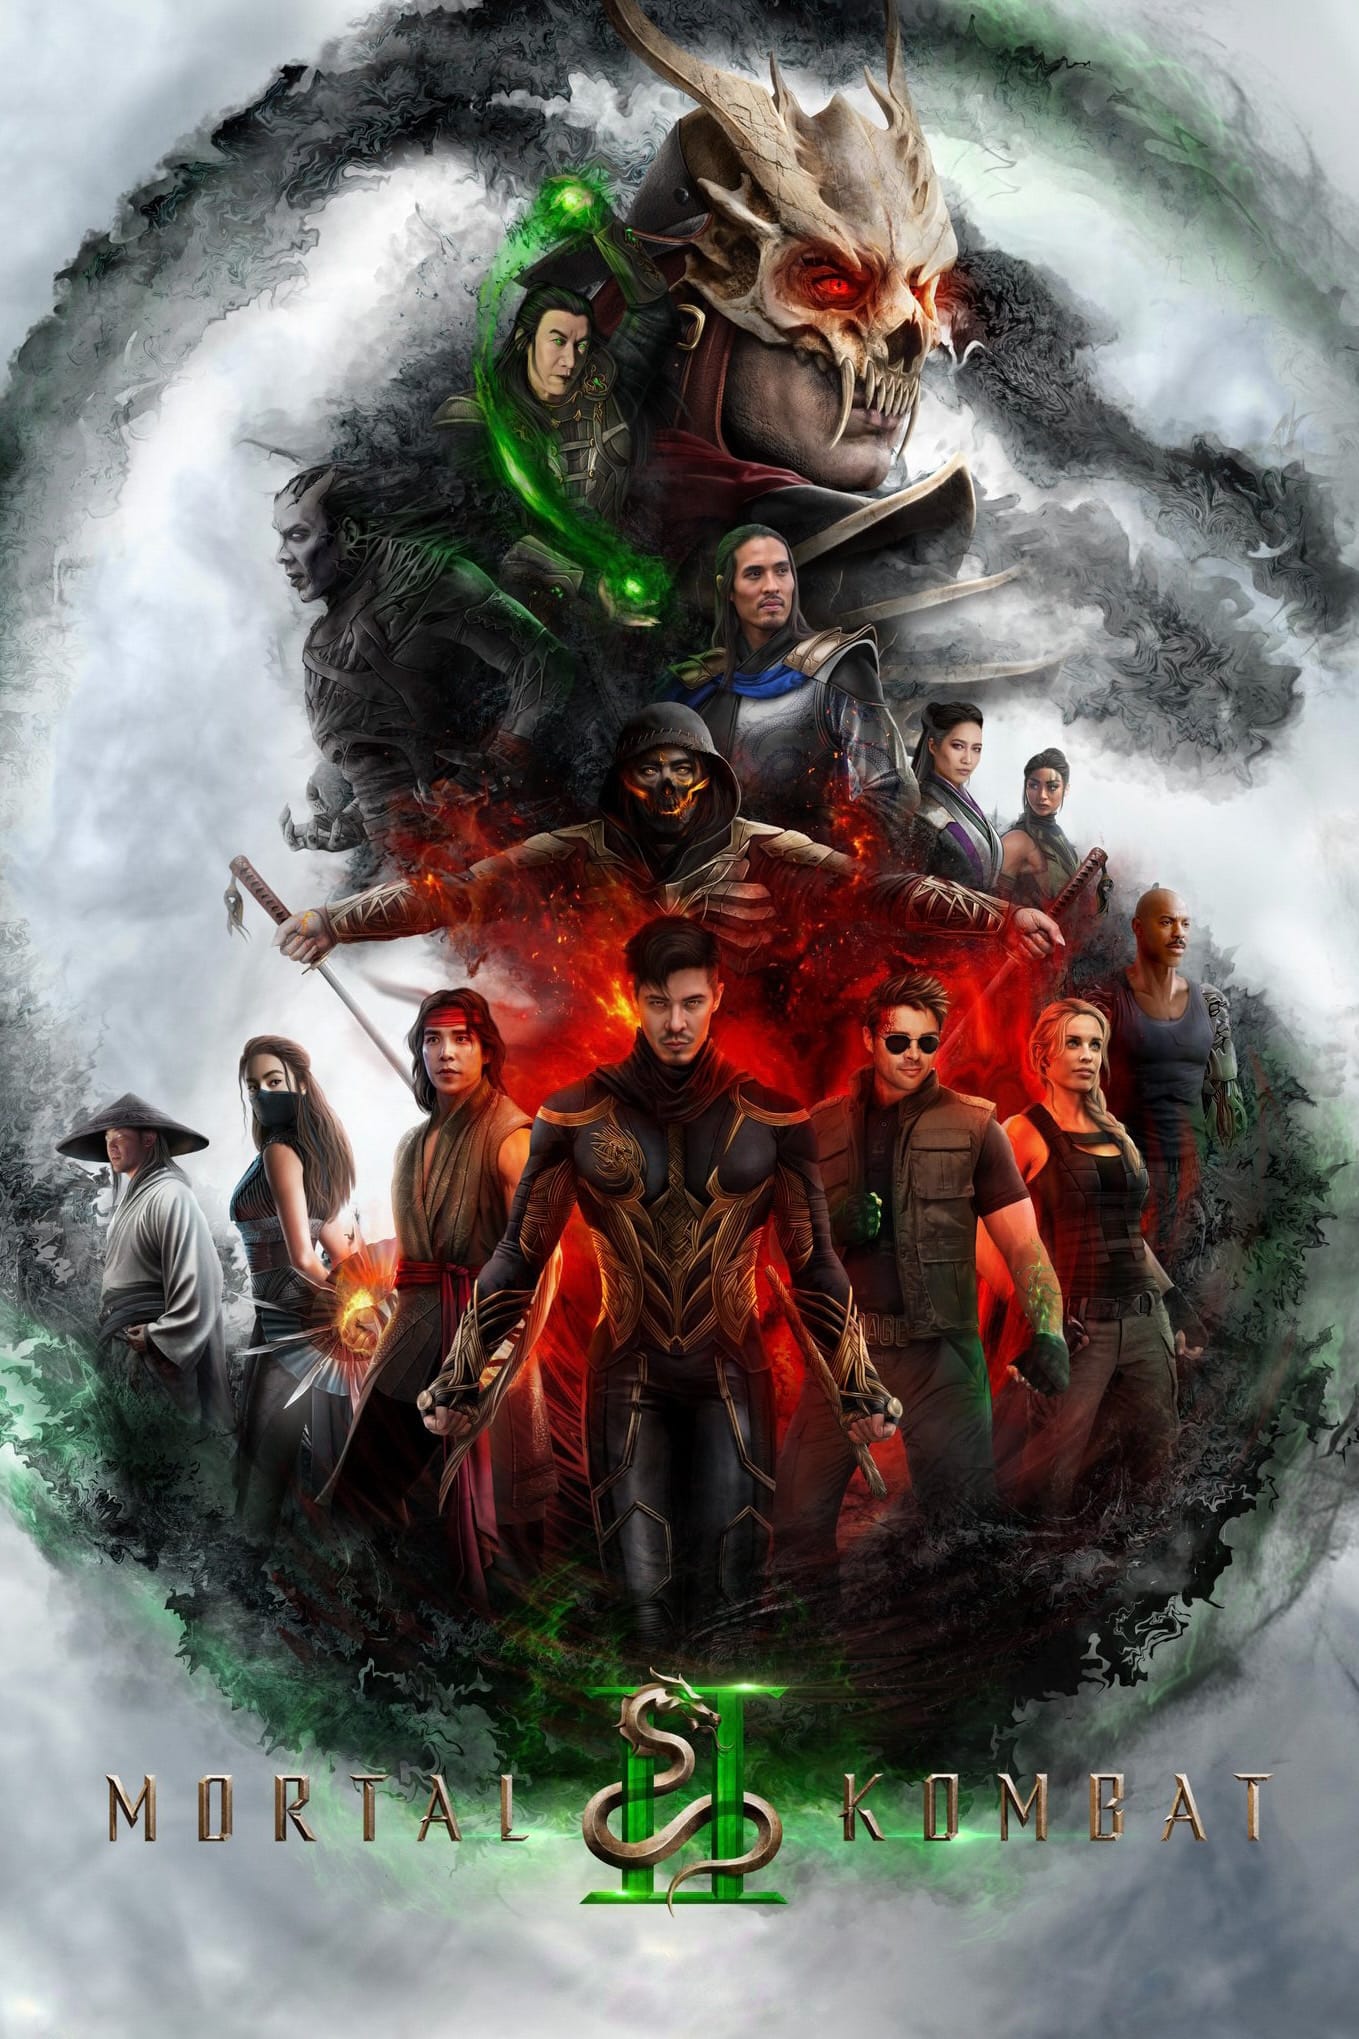 Mortal Kombat II arriverà nei cinema il 24 ottobre 2025